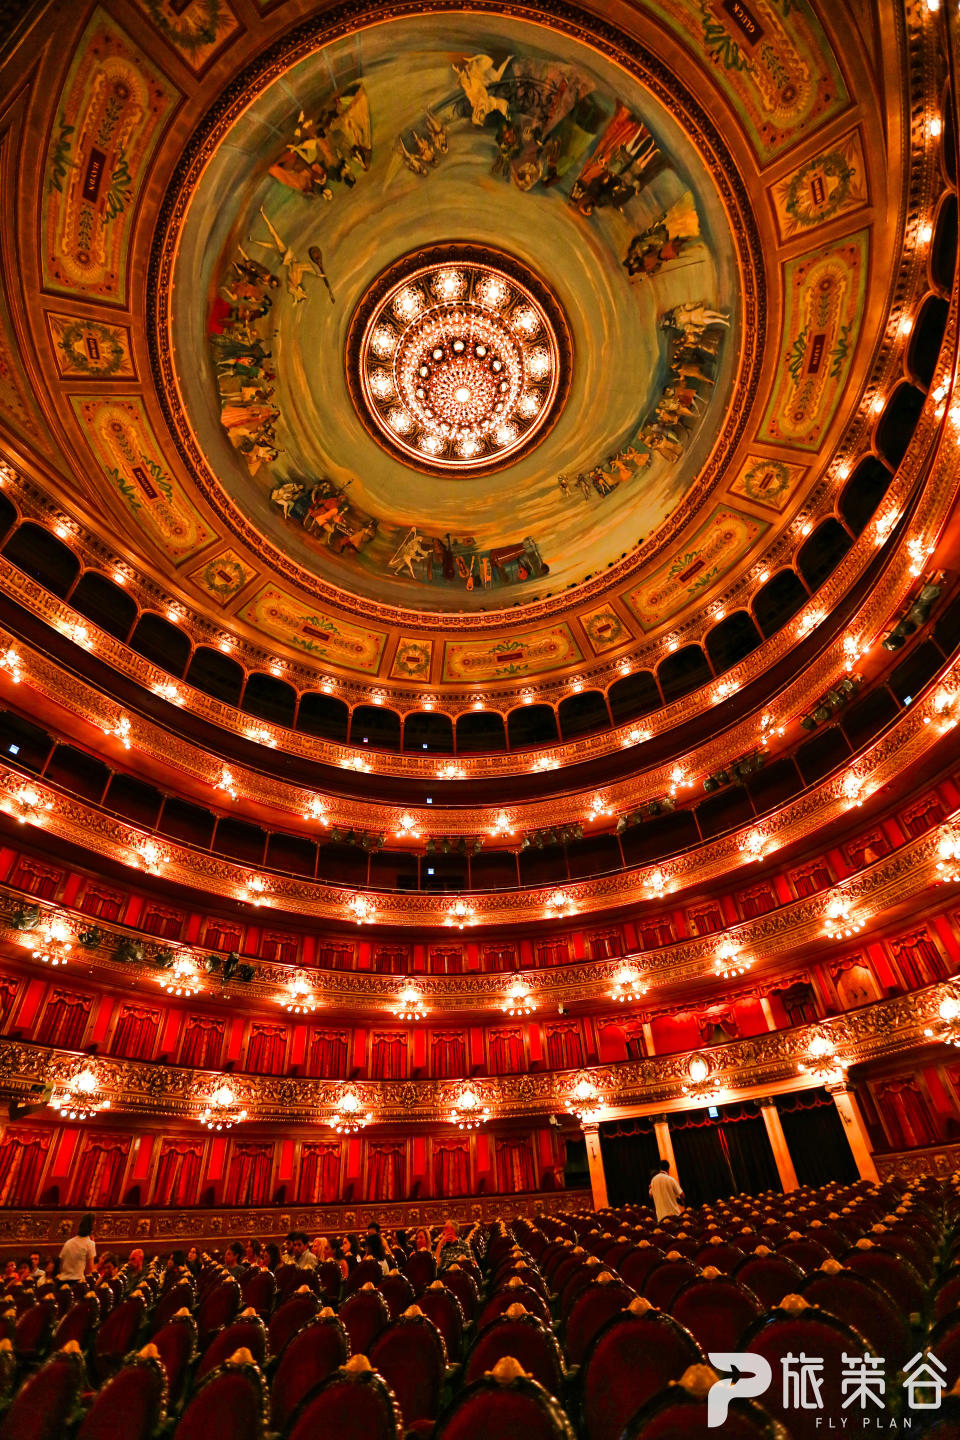 科隆歌劇院具有濃郁的歐洲古典劇院風格